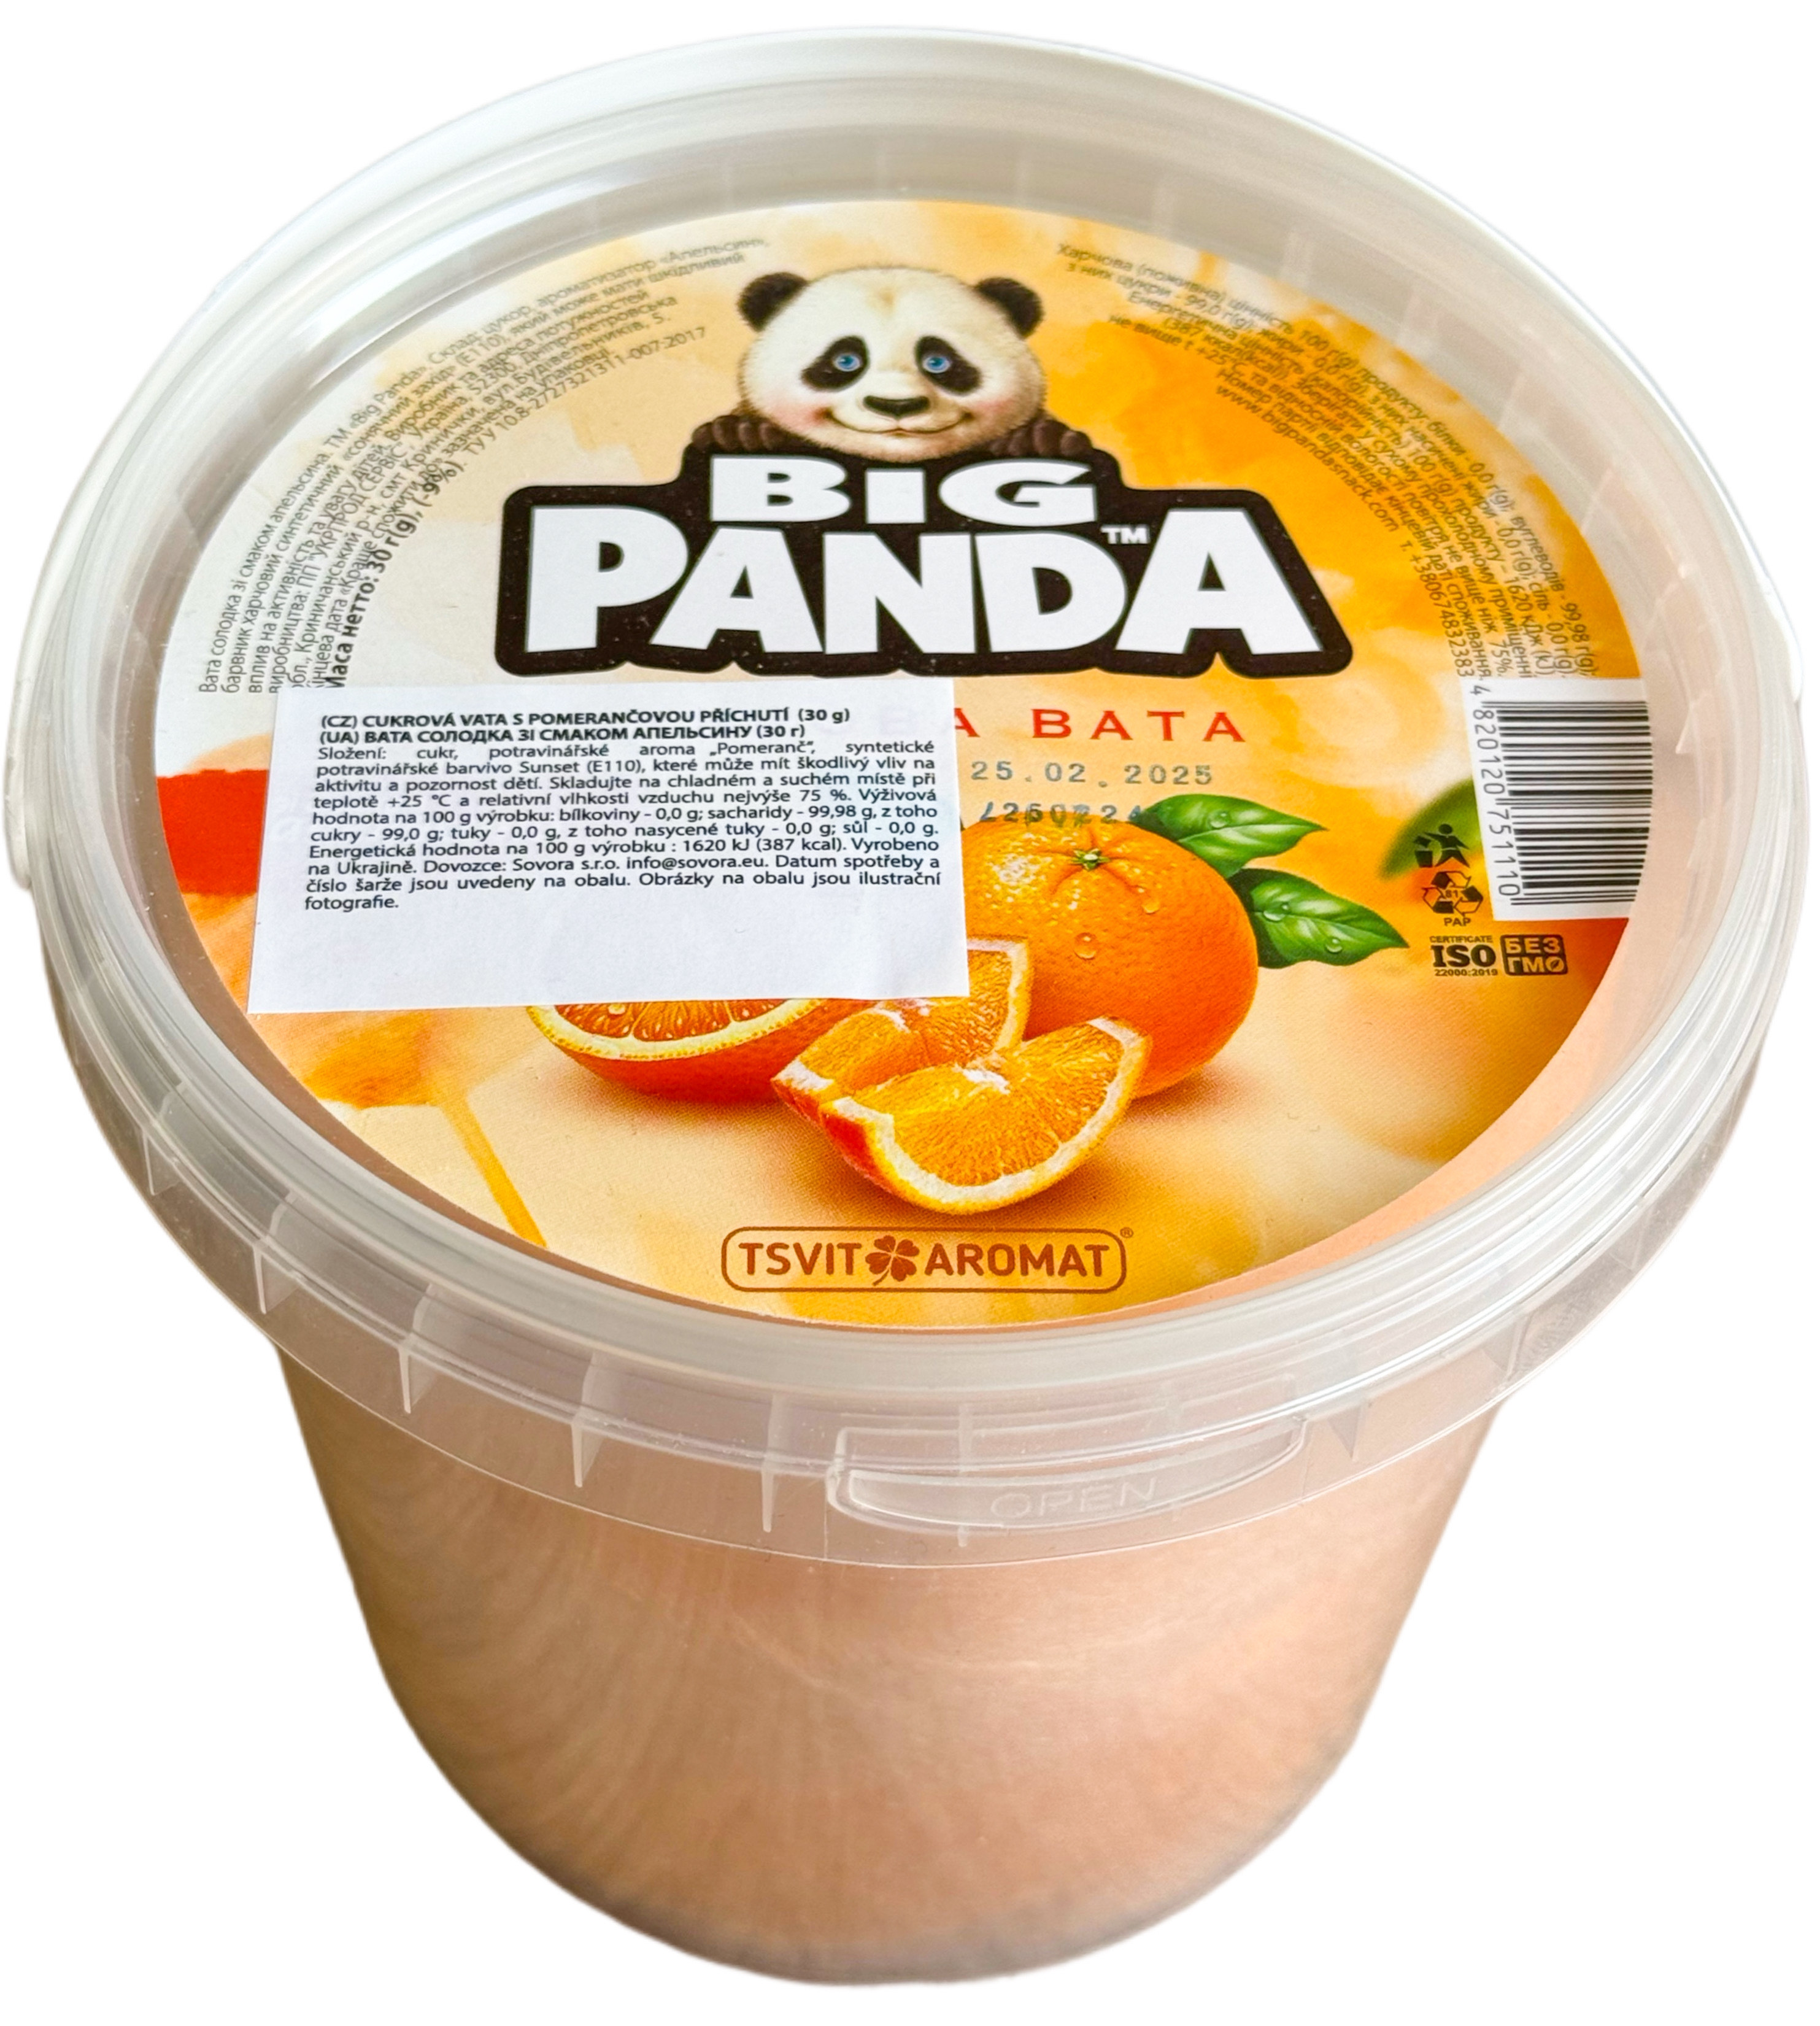 Cukrová vata s pomerančovou příchutí 30g Big Panda